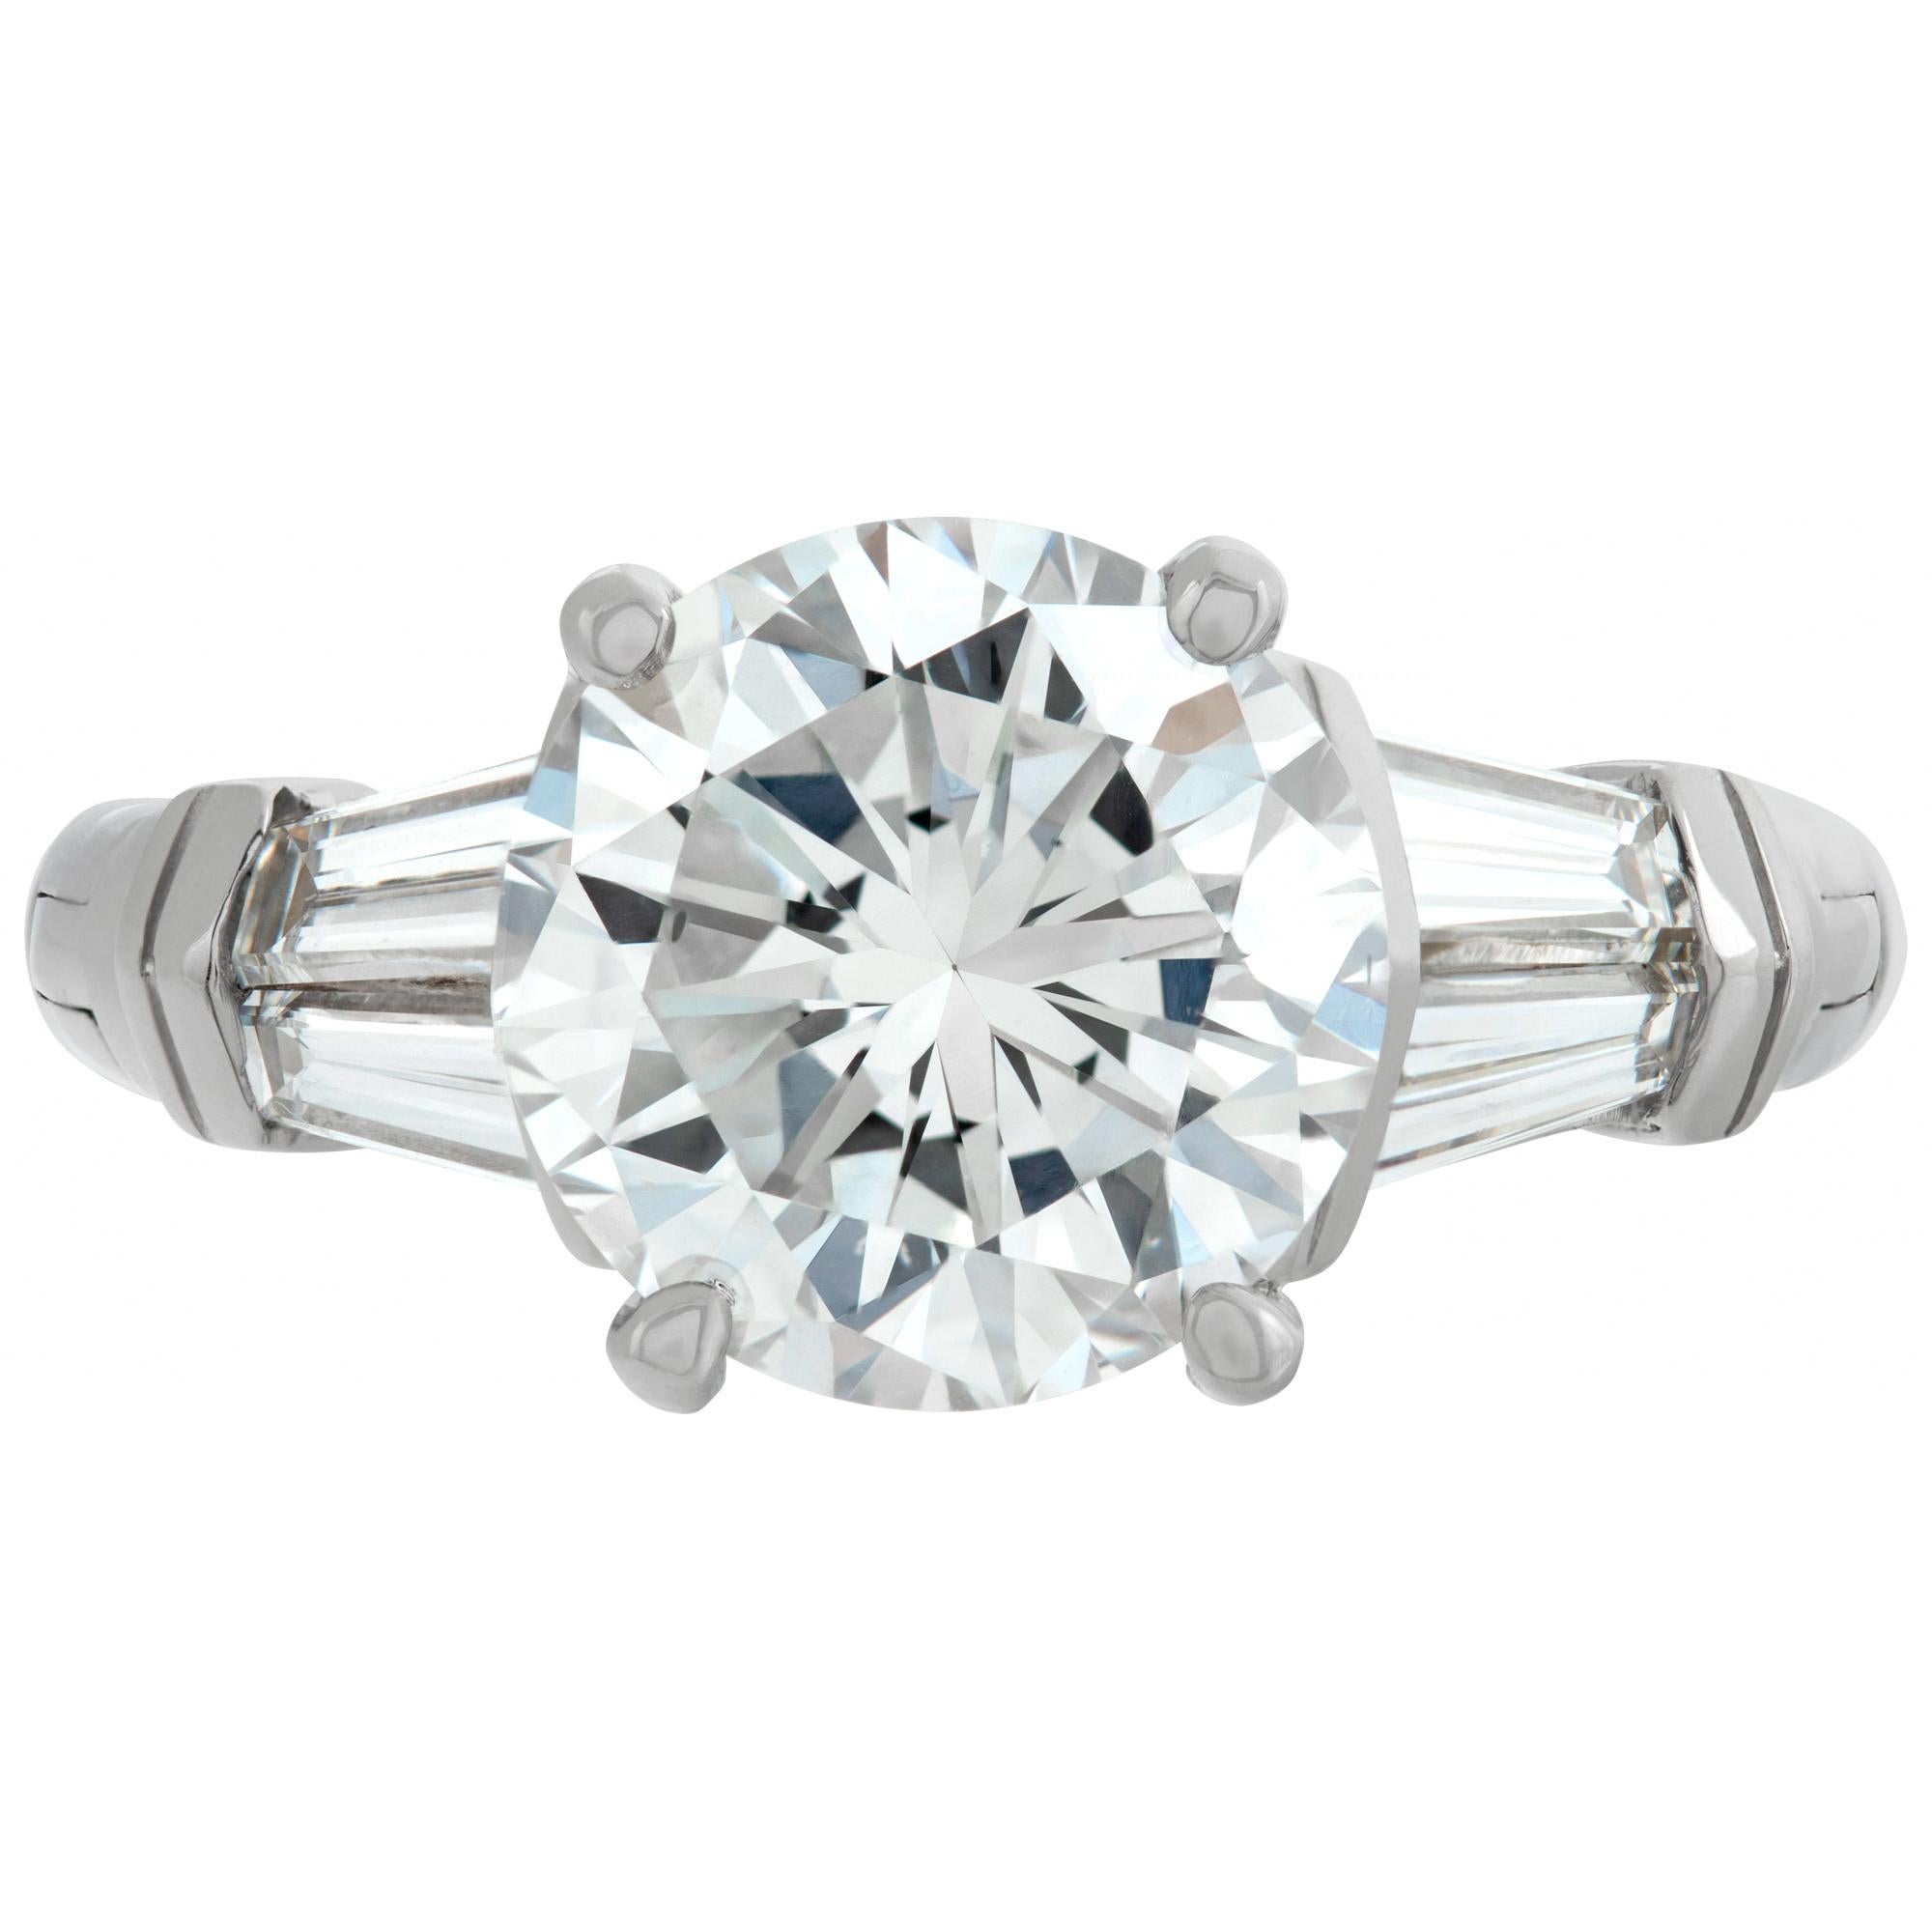 Diamant rond de taille brillant certifié GIA de 3,09 carats, couleur H, pureté VS2, serti sur une monture 